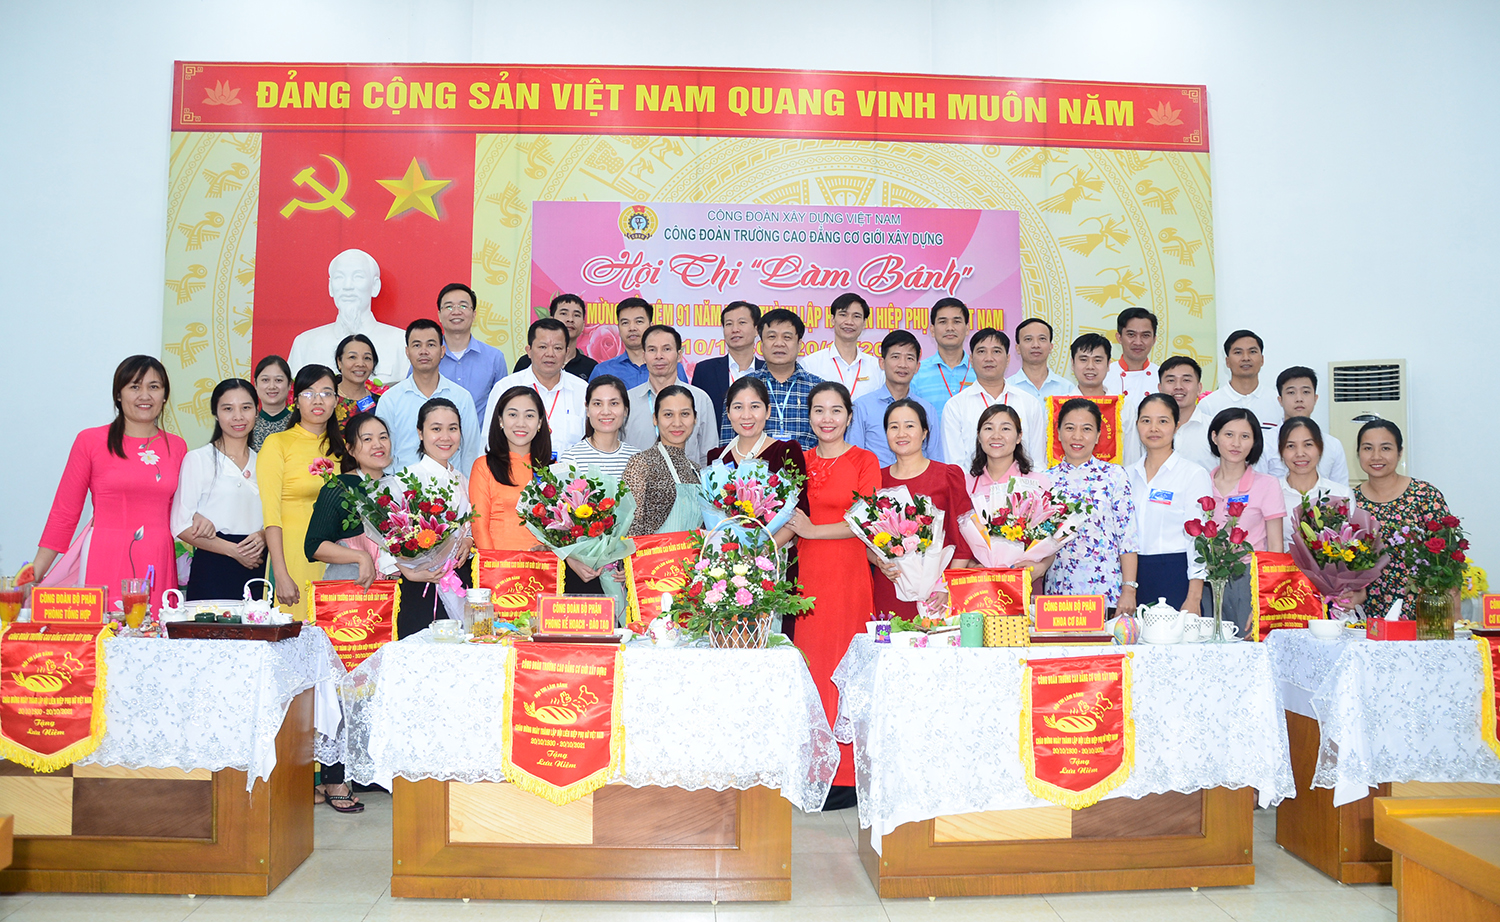 Công đoàn trường Cao đẳng Cơ giới Xây dựng tổ chức các hoạt động chào mừng Kỷ niệm 91 năm ngày thành lập Hội Liên hiệp Phụ nữ Việt Nam (20/10/1930 - 20/10/2021)